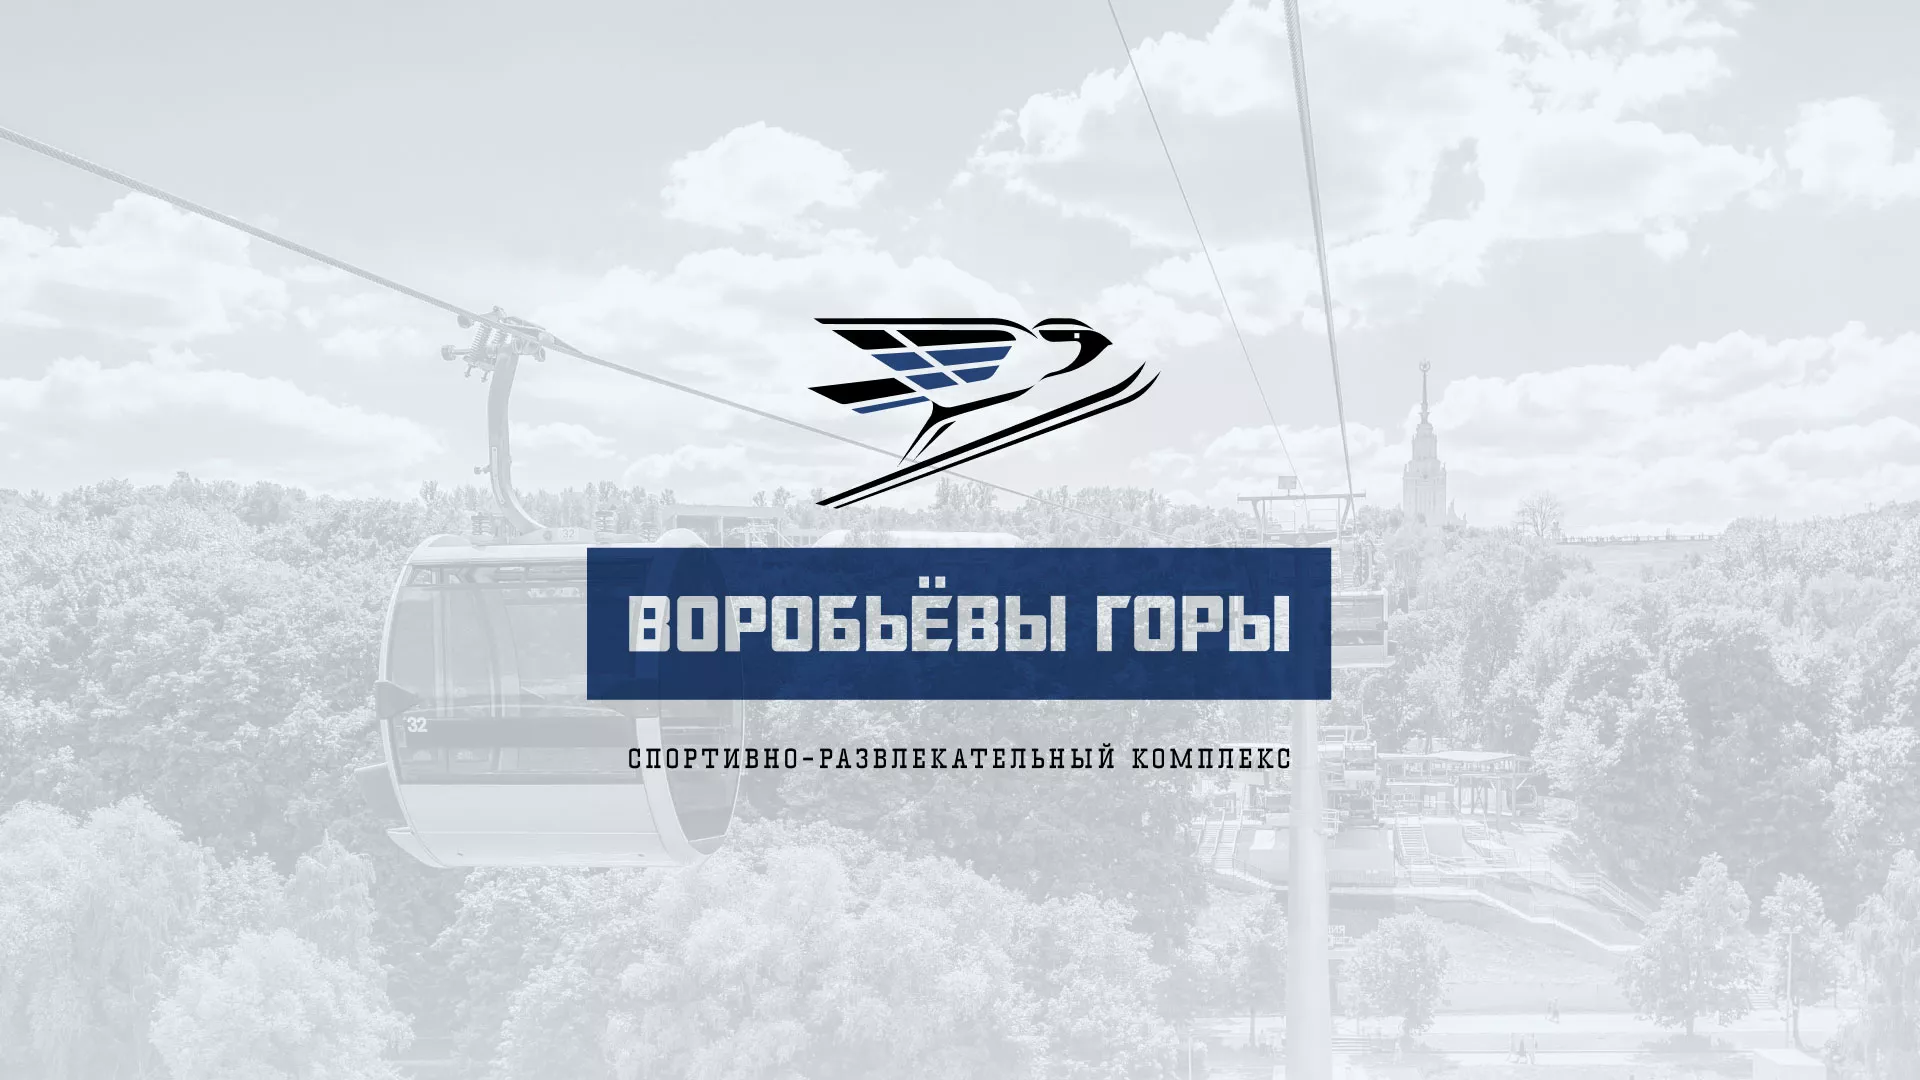 Разработка сайта в Ногинске для спортивно-развлекательного комплекса «Воробьёвы горы»